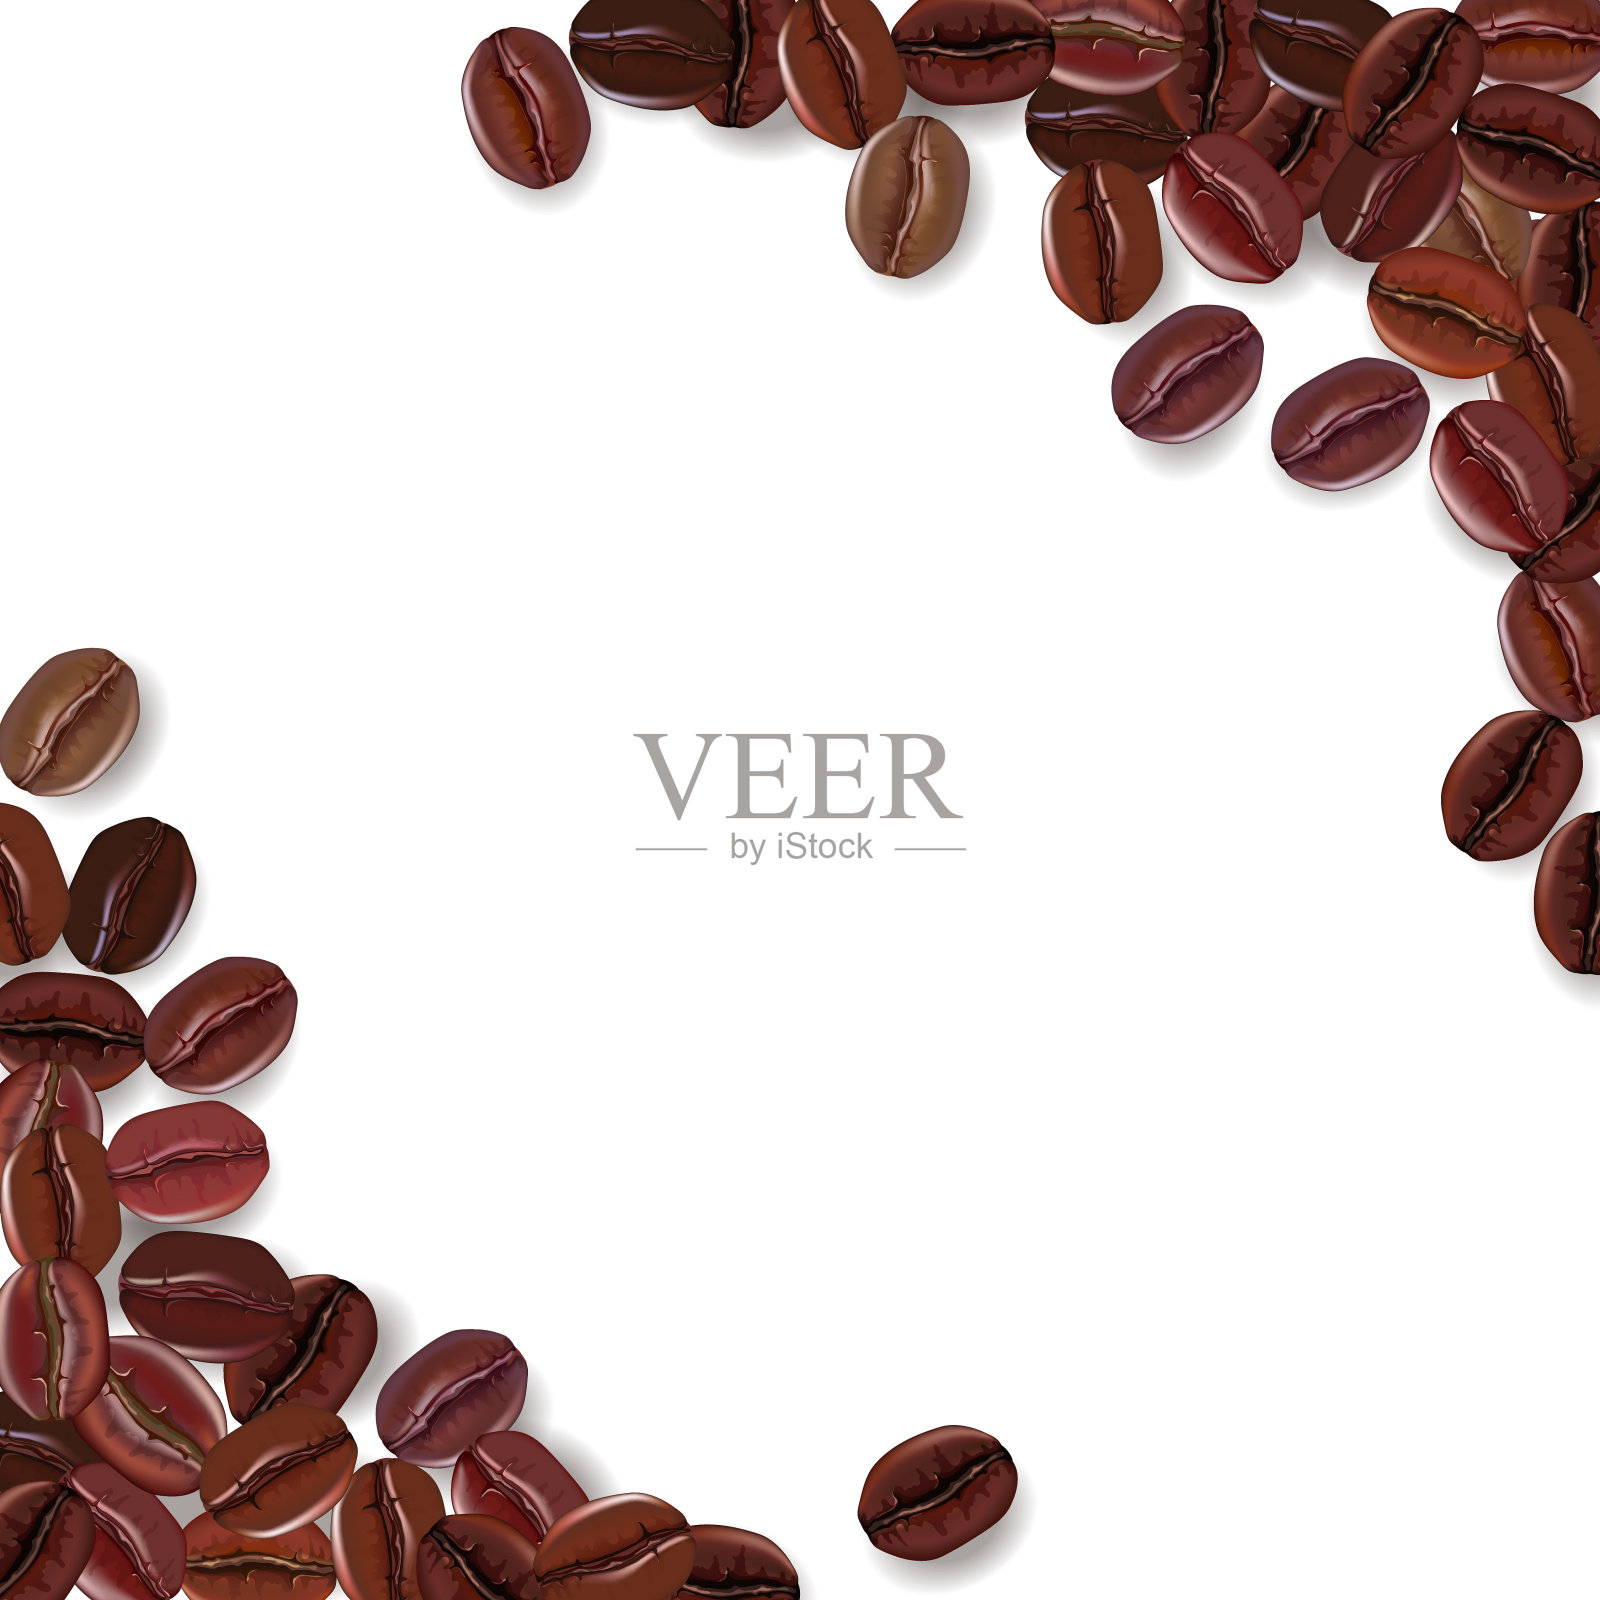 背景与现实的咖啡豆和文字的地方。设计元素图片